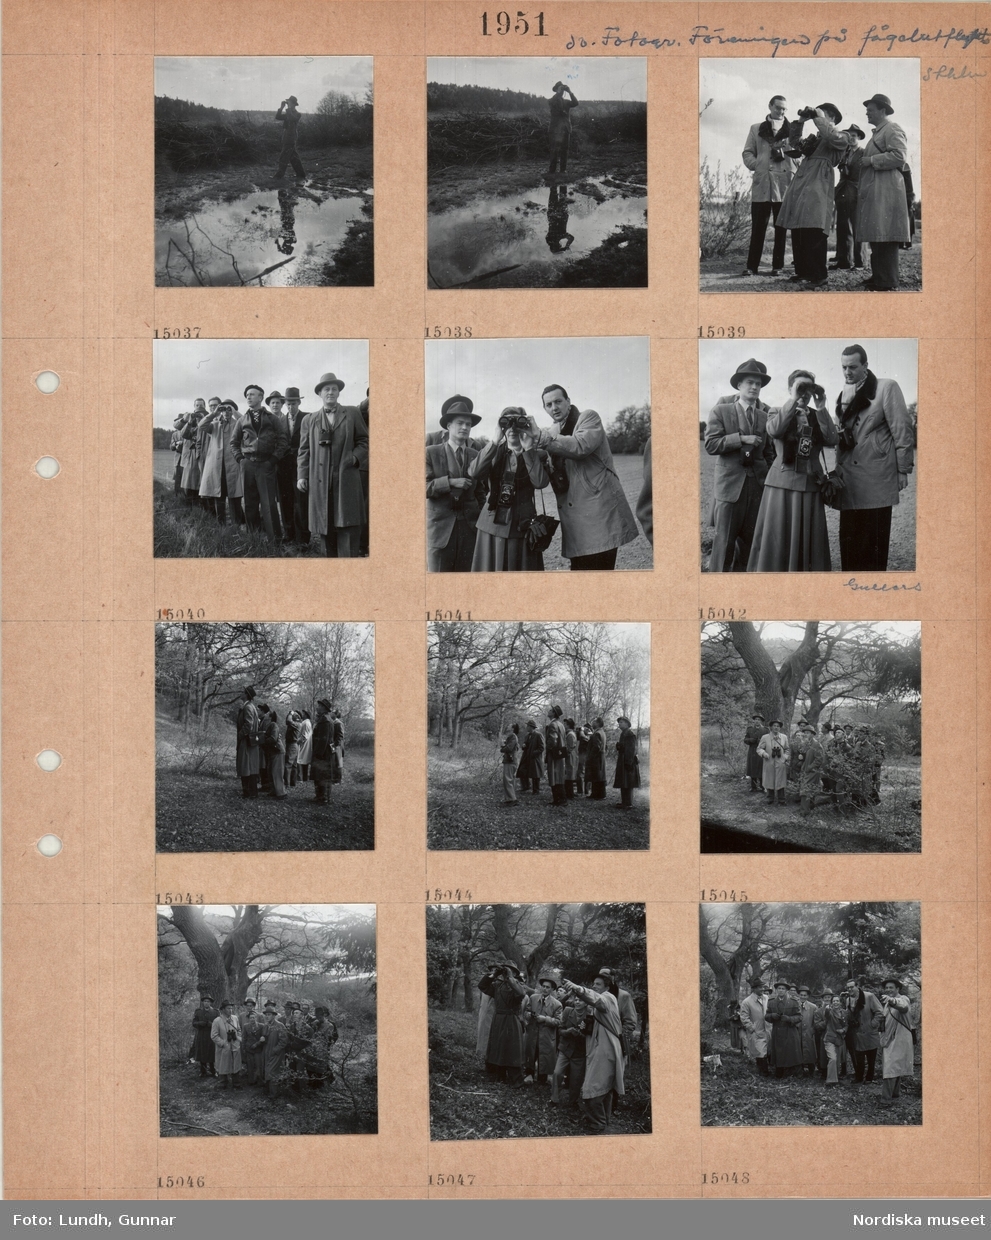 Motiv: Fotografiska Föreningens fågelutflykt Sthlm (Stocholm) ;
En man tittar i en kikare, en grupp män varav en är fotograf K W Gullers och en kvinna tittar i kikare, en grupp män och en kvinna står i en skog.